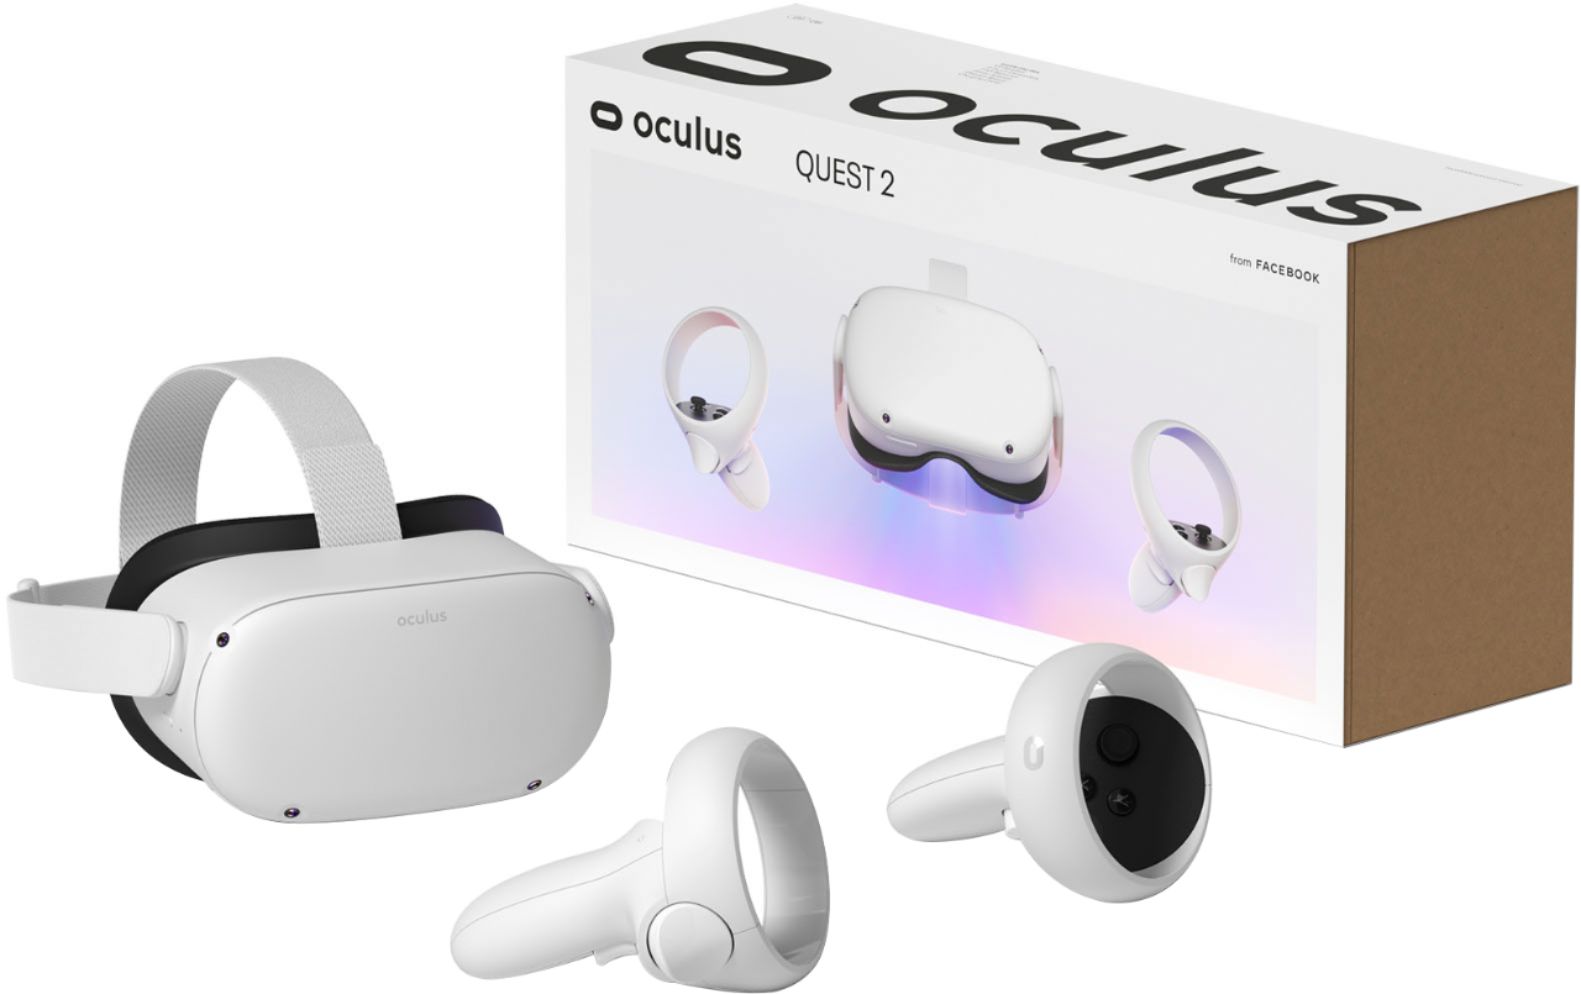 oculus quest 64gb stock